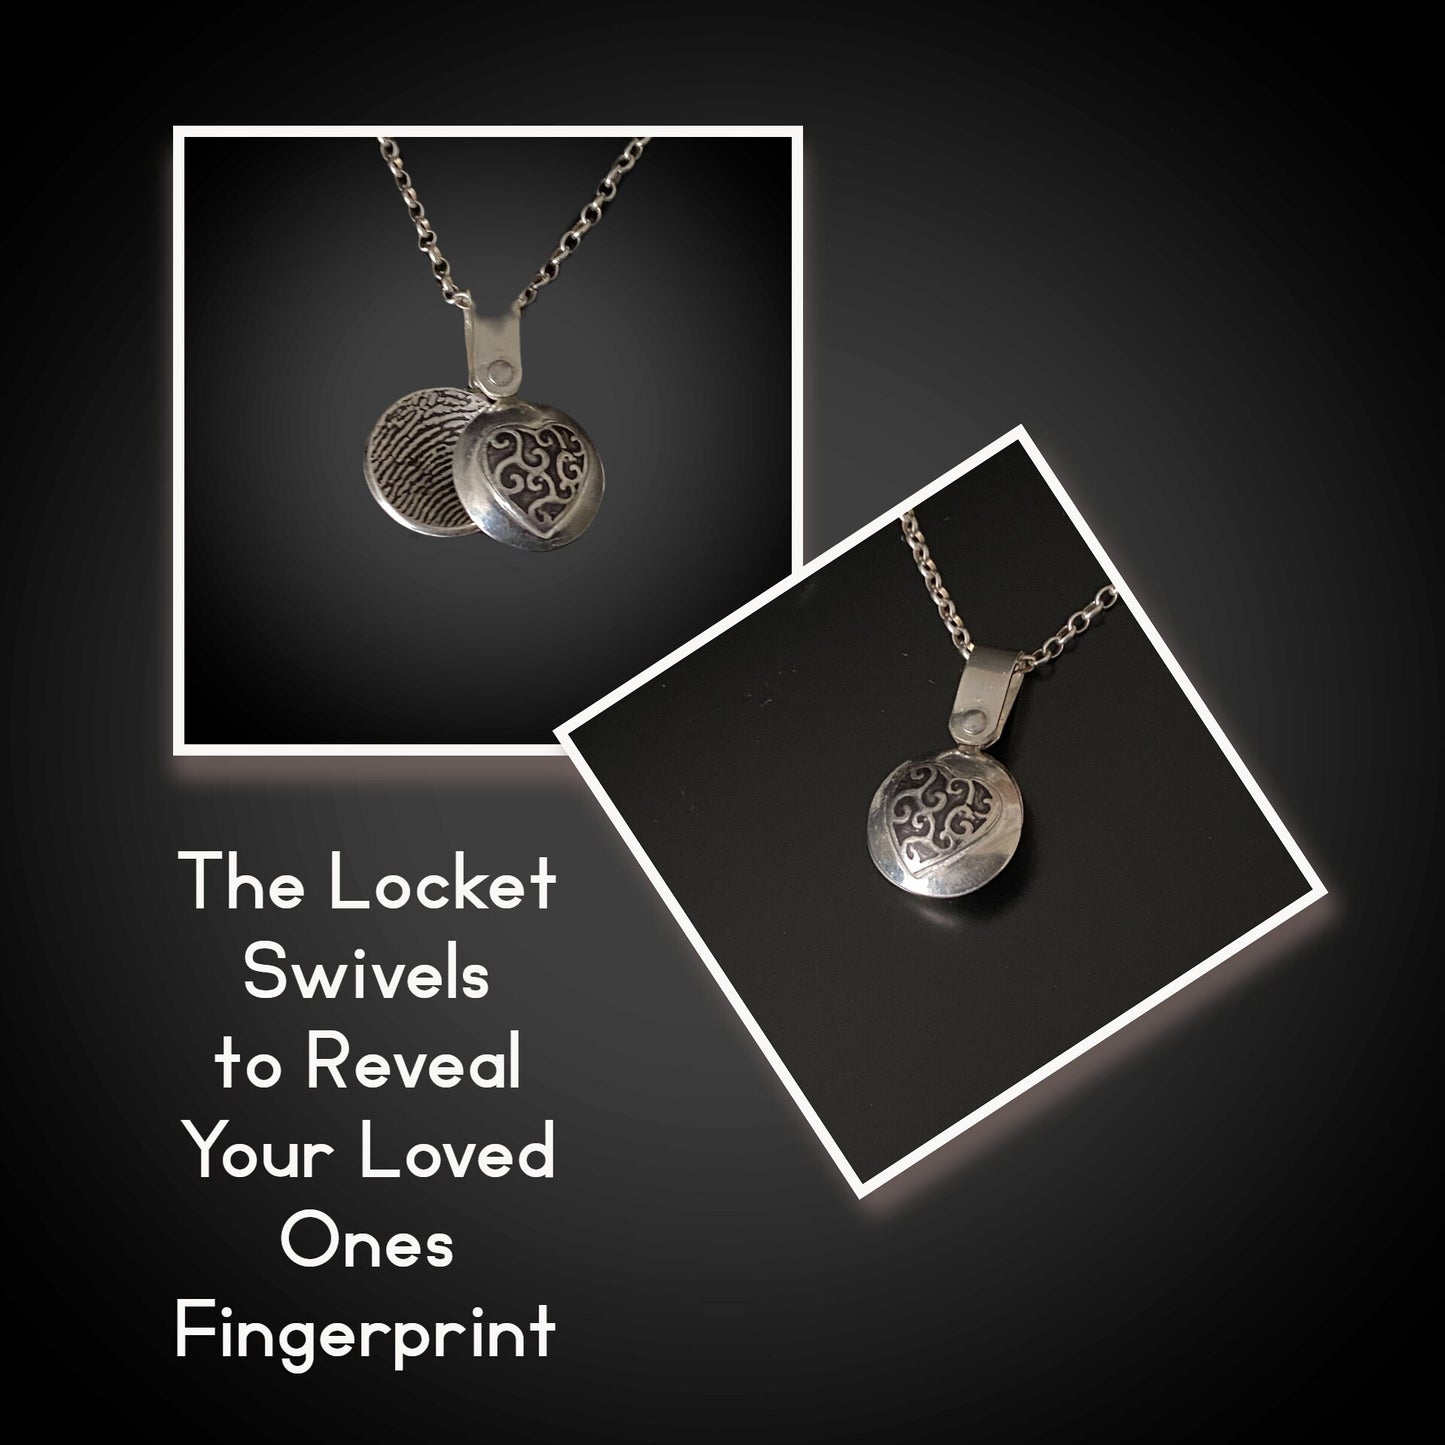 Fingerprint Charm Necklace Swivels to Reveal the Fingerprint